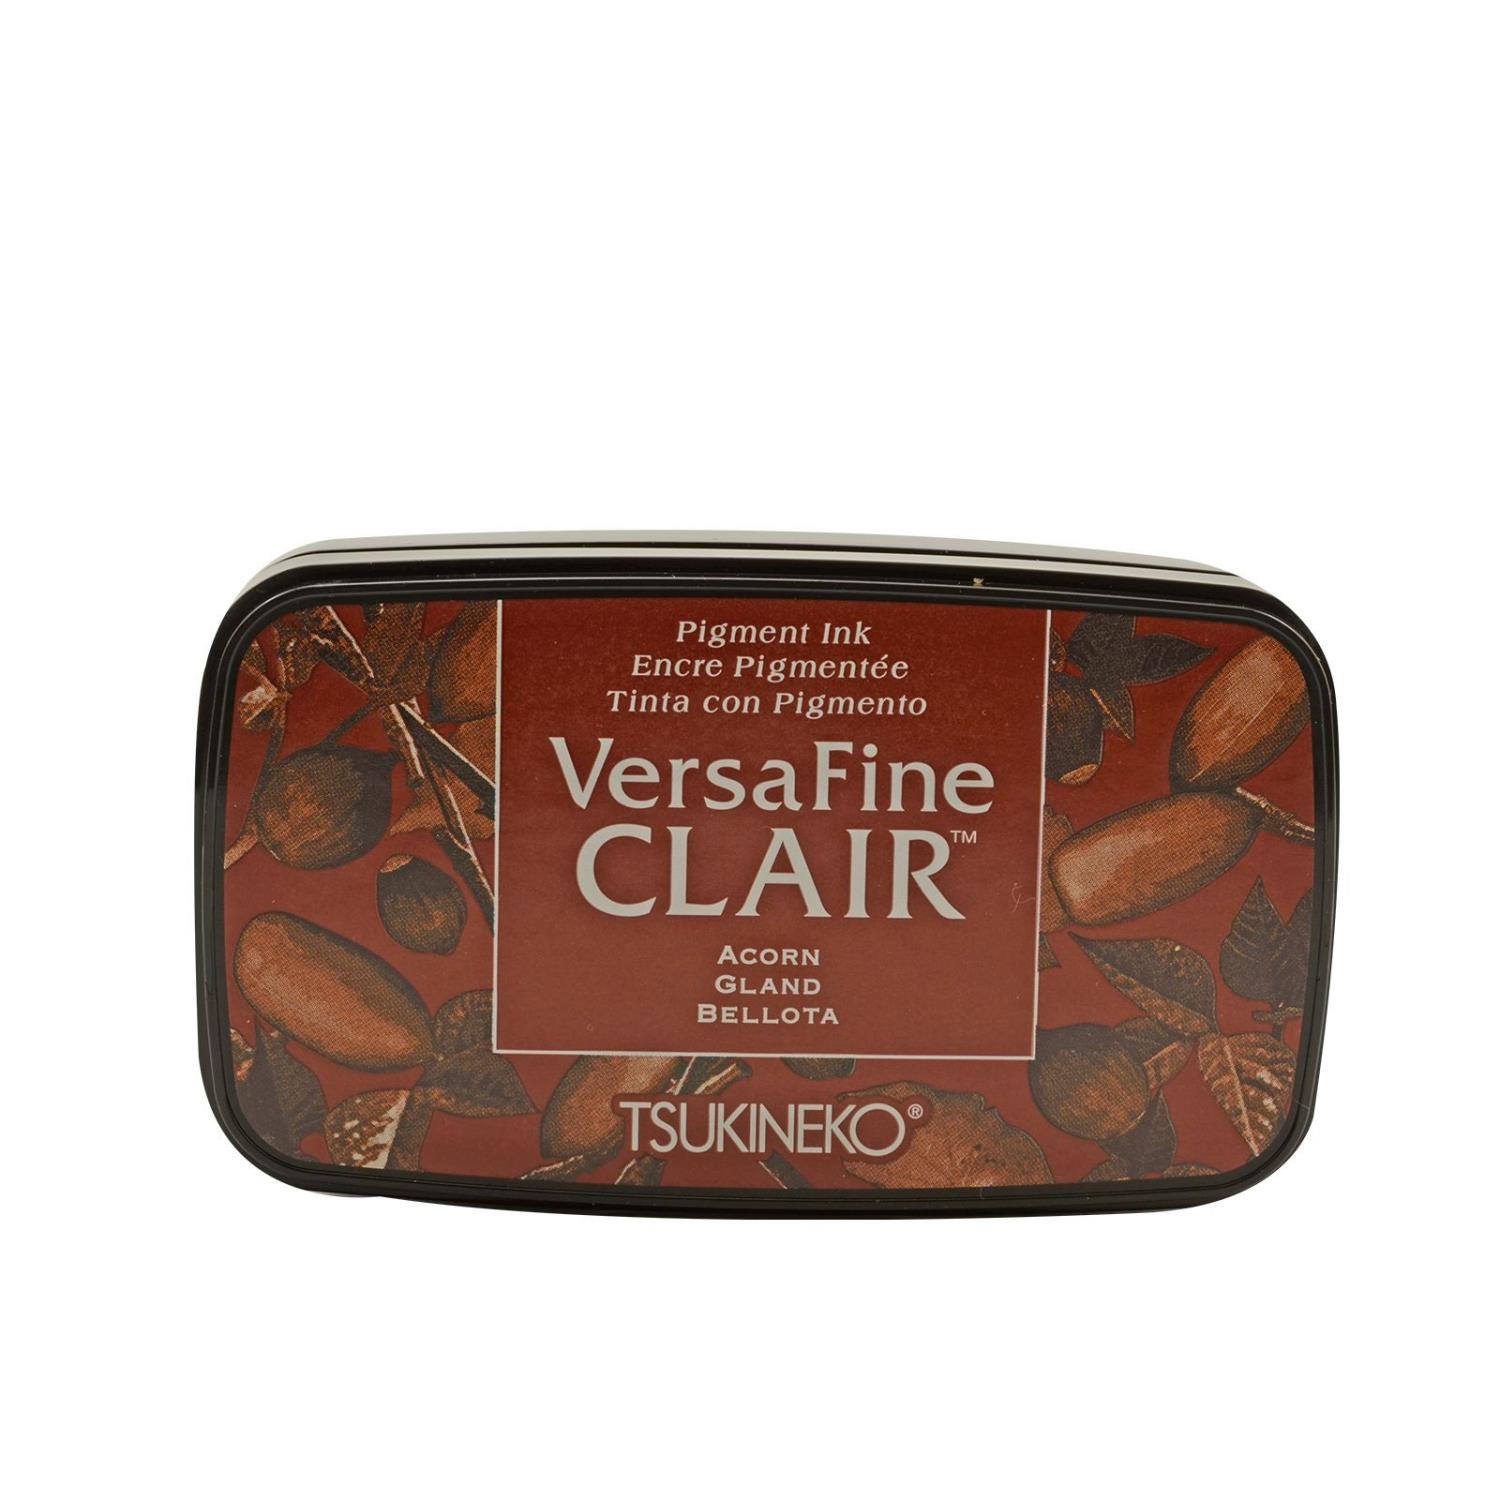 VersaFine clair dark inkpad - acorn